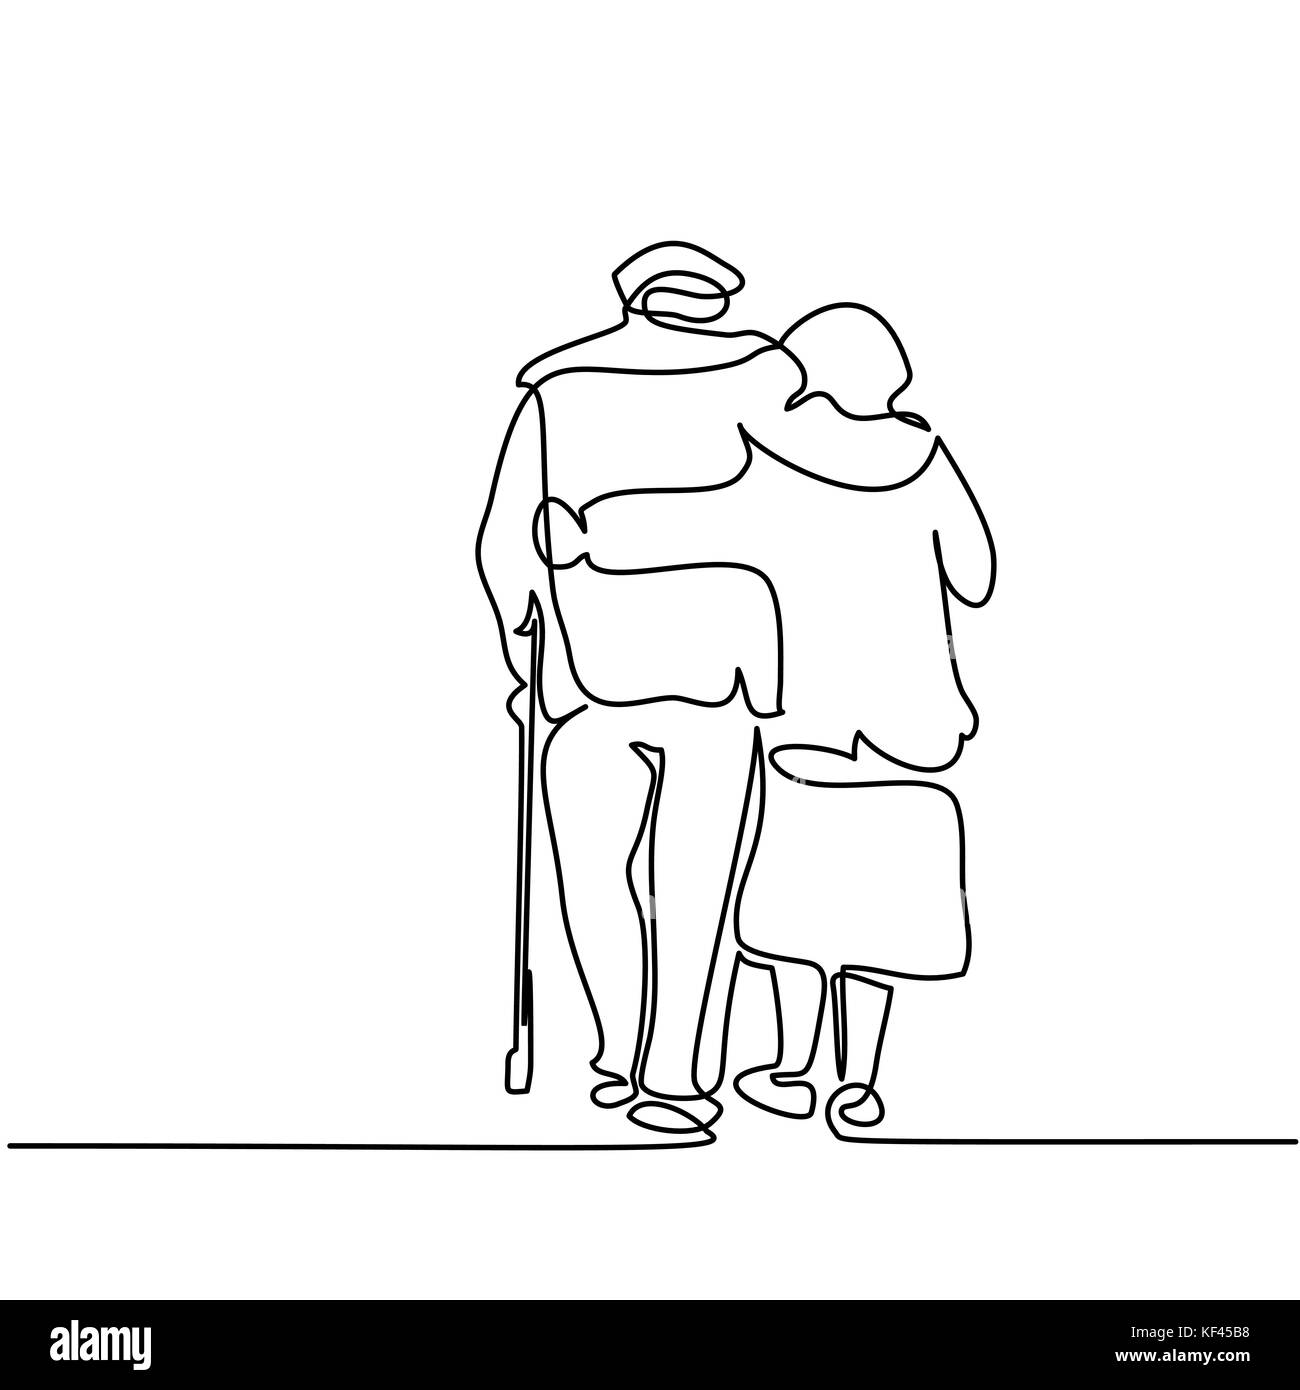 Durchgehende Linie zeichnen. Gerne älteres Paar umarmen und Walking. Vector  Illustration Stock-Vektorgrafik - Alamy